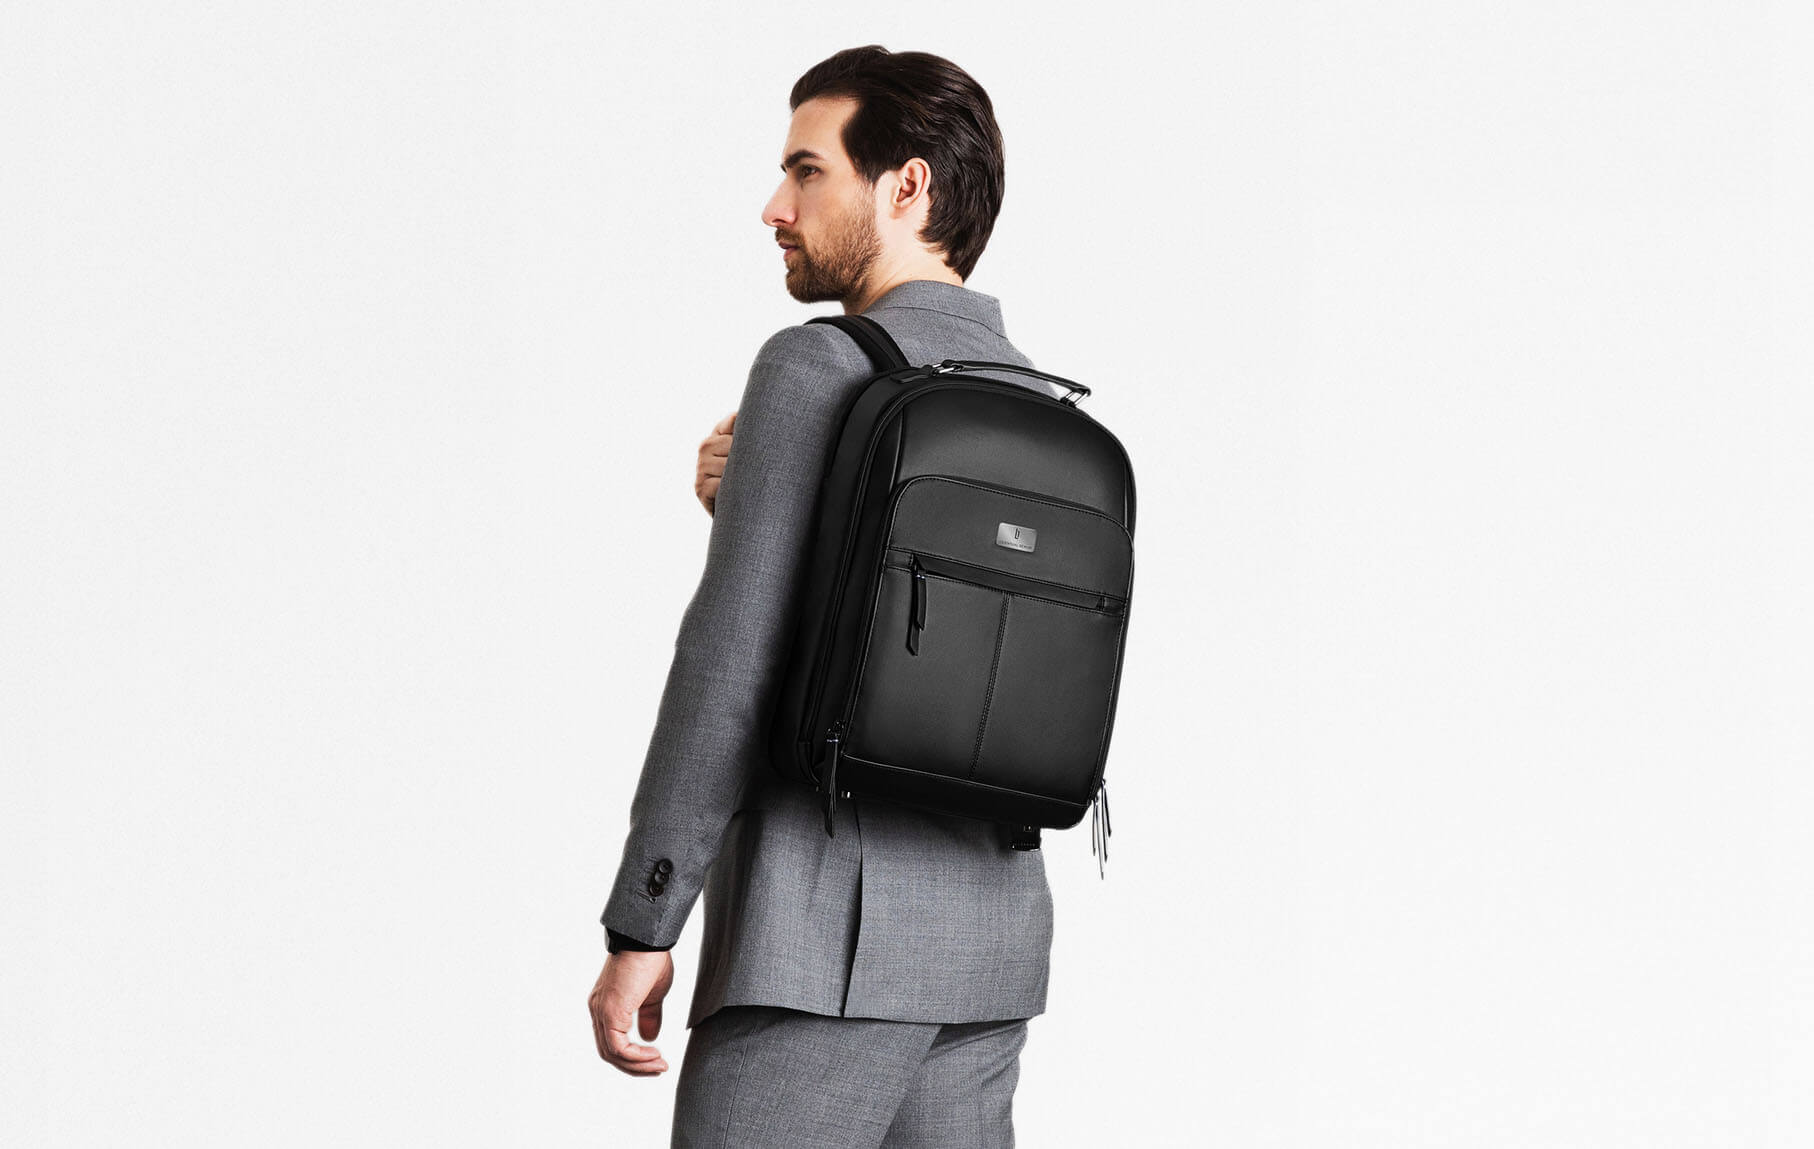 ROARING Bag Brown Multi Mini Backpack